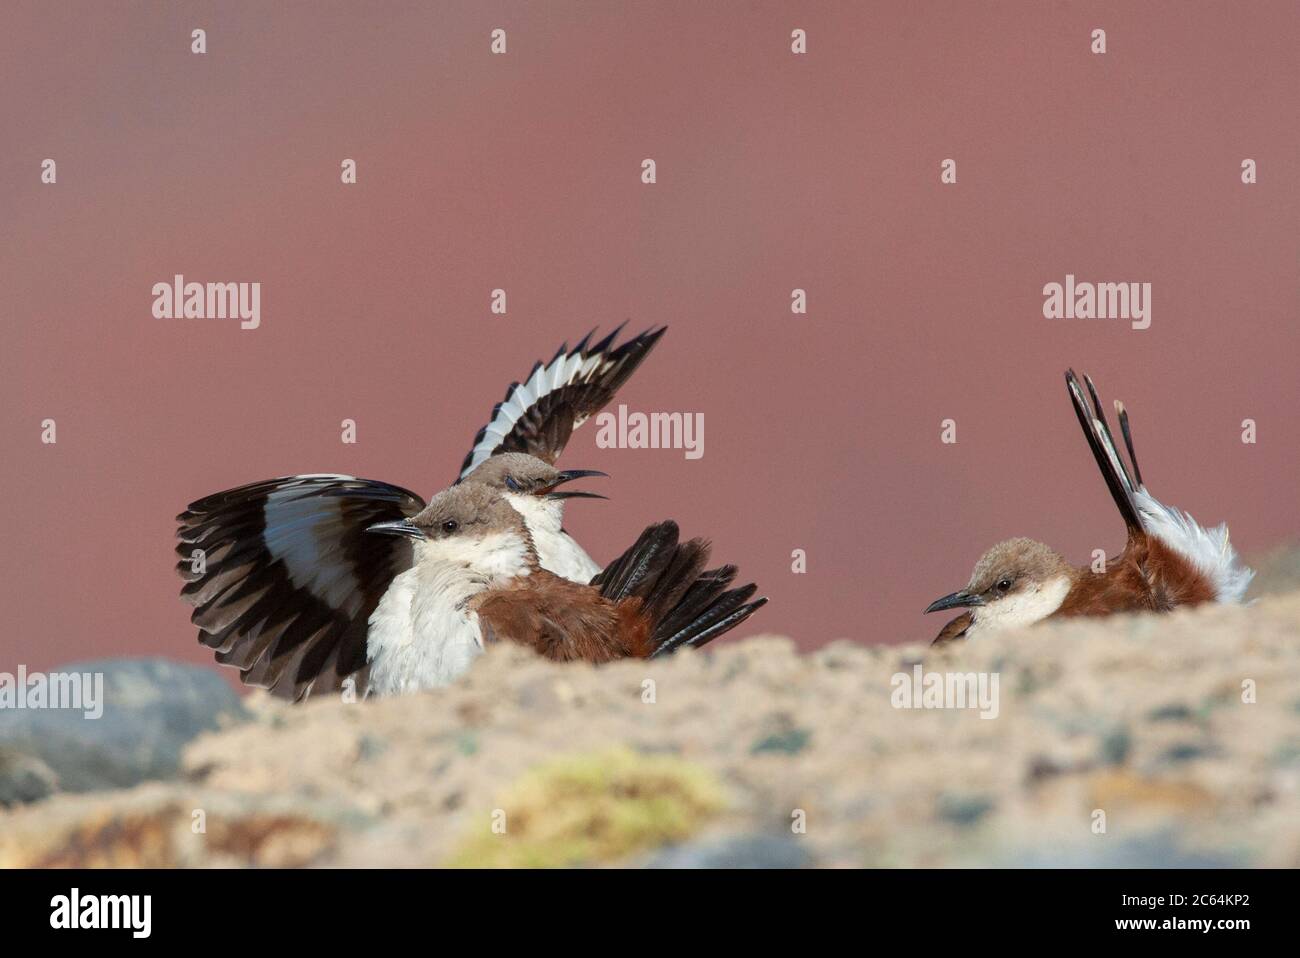 Cinq clodes à ventre blanc (Cinclodes palliatus) en danger critique dans une tourbière des Andes près de Marcapomacocha au Pérou. Trois oiseaux. Banque D'Images